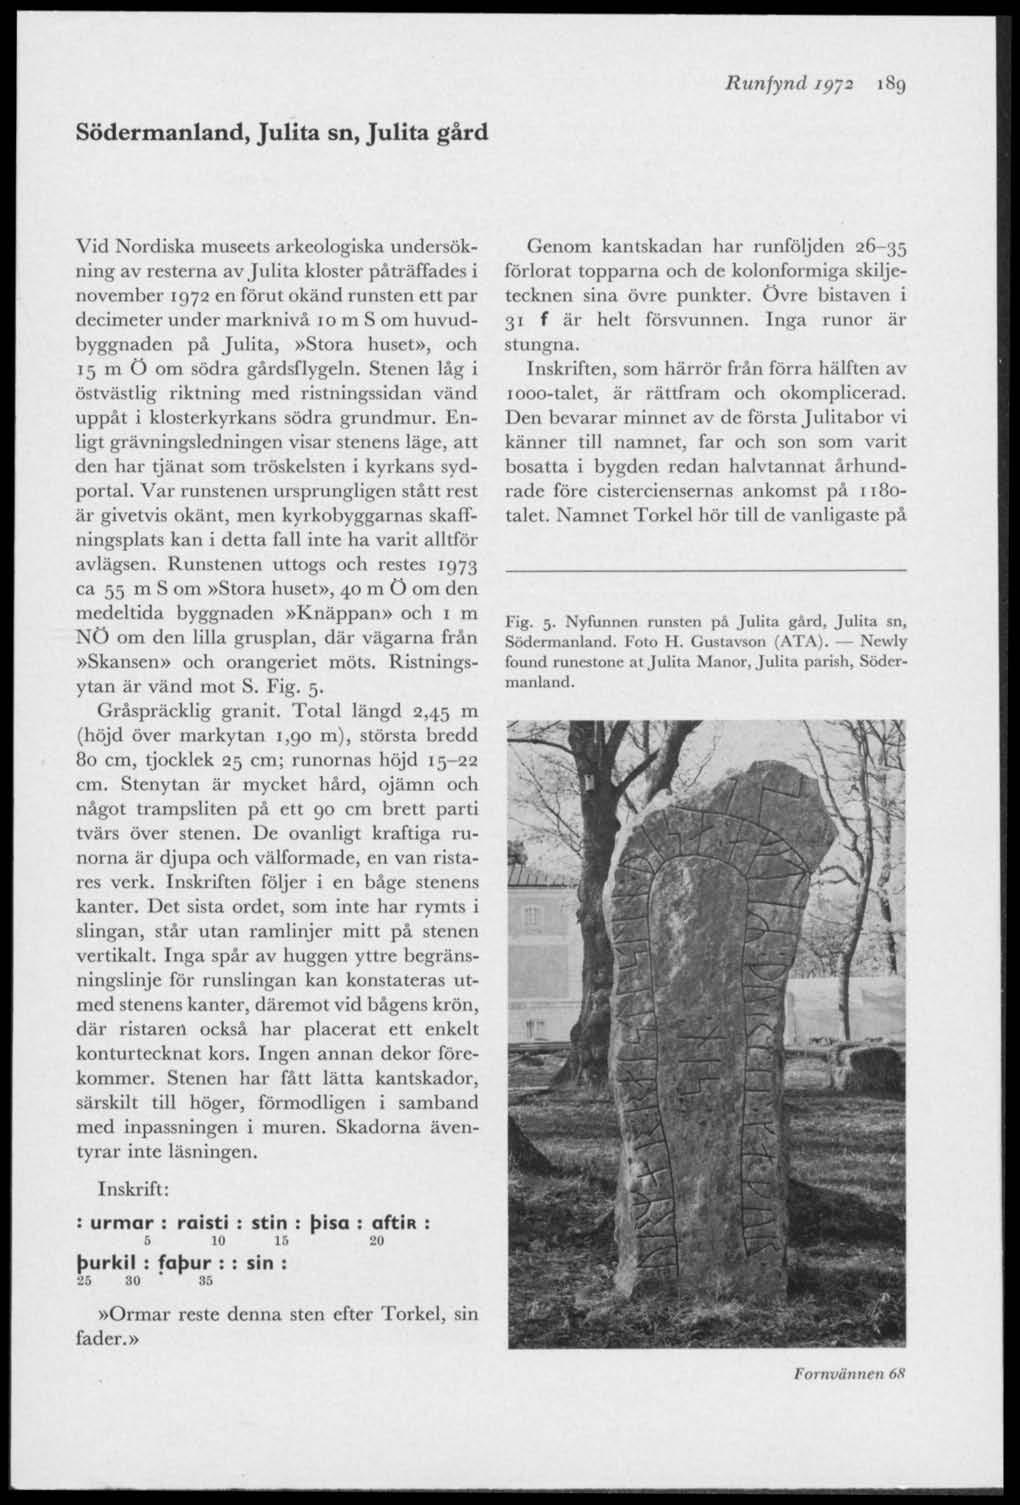 Runfynd jp~2 189 Södermanland, Julita sn, Julita gård Vid Nordiska museets arkeologiska undersökning av resterna av Julita kloster påträffades i november 1972 en förut okänd runsten ett par decimeter